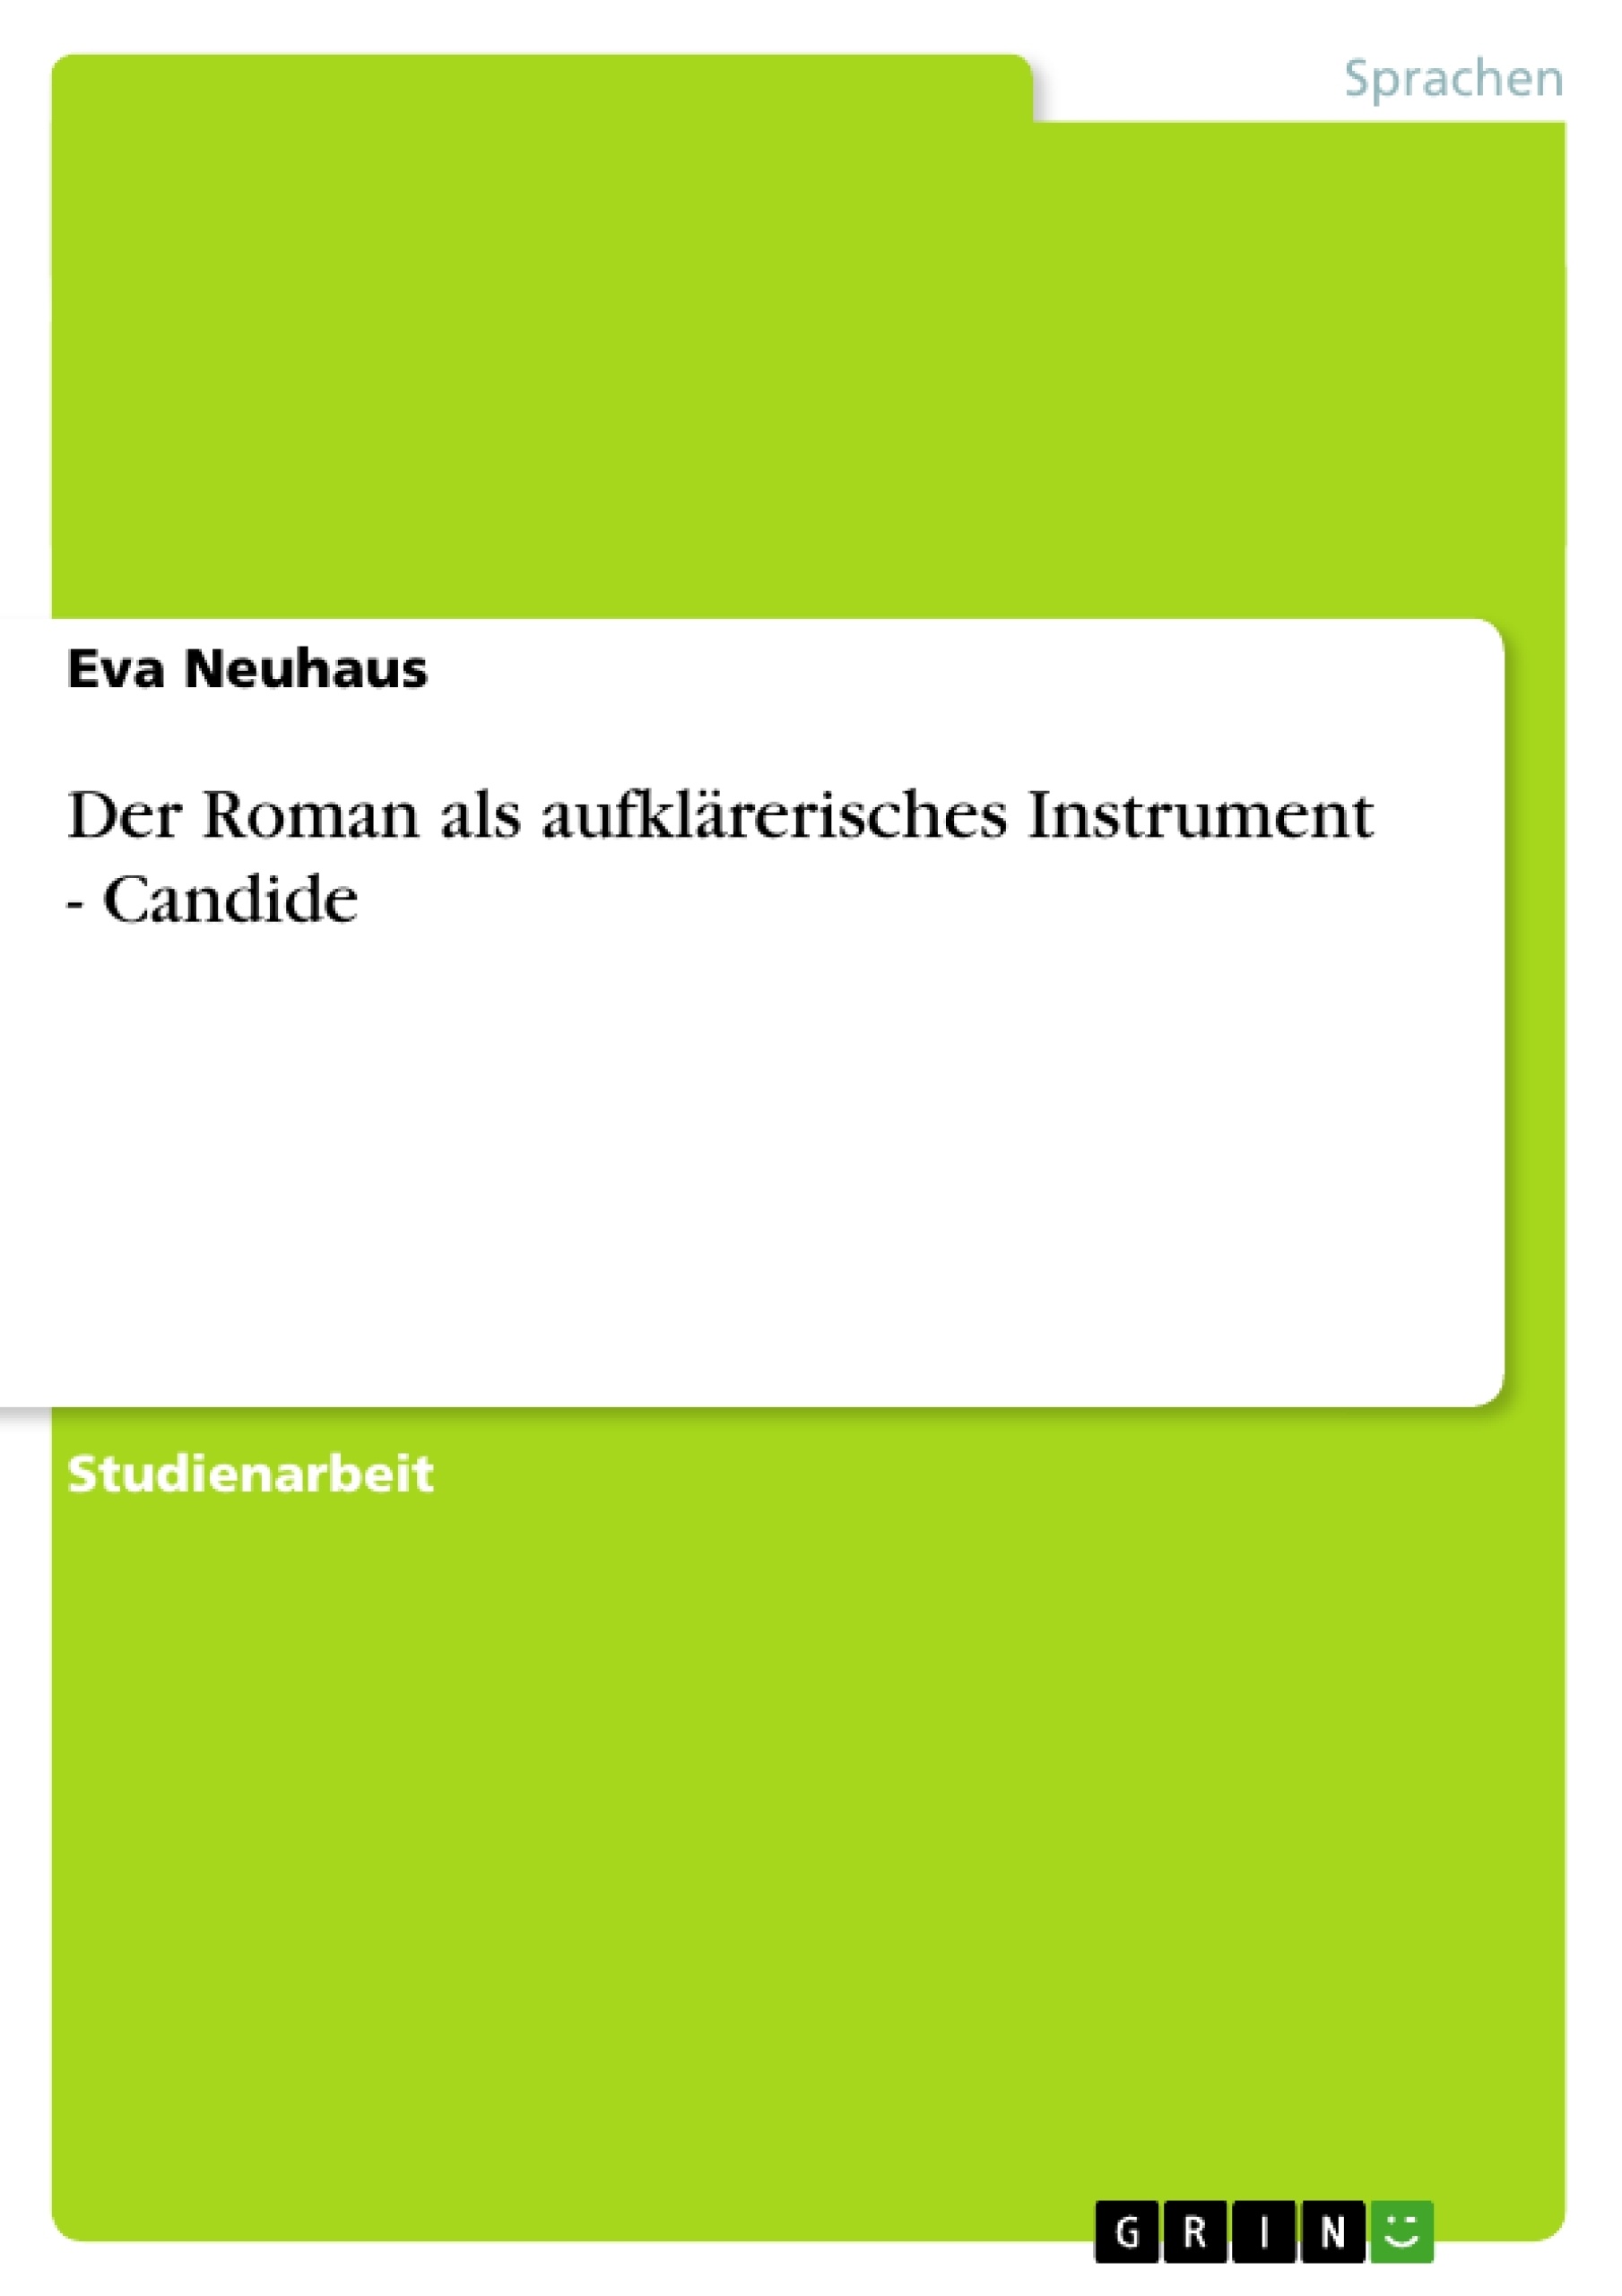 Título: Der Roman als aufklärerisches Instrument - Candide